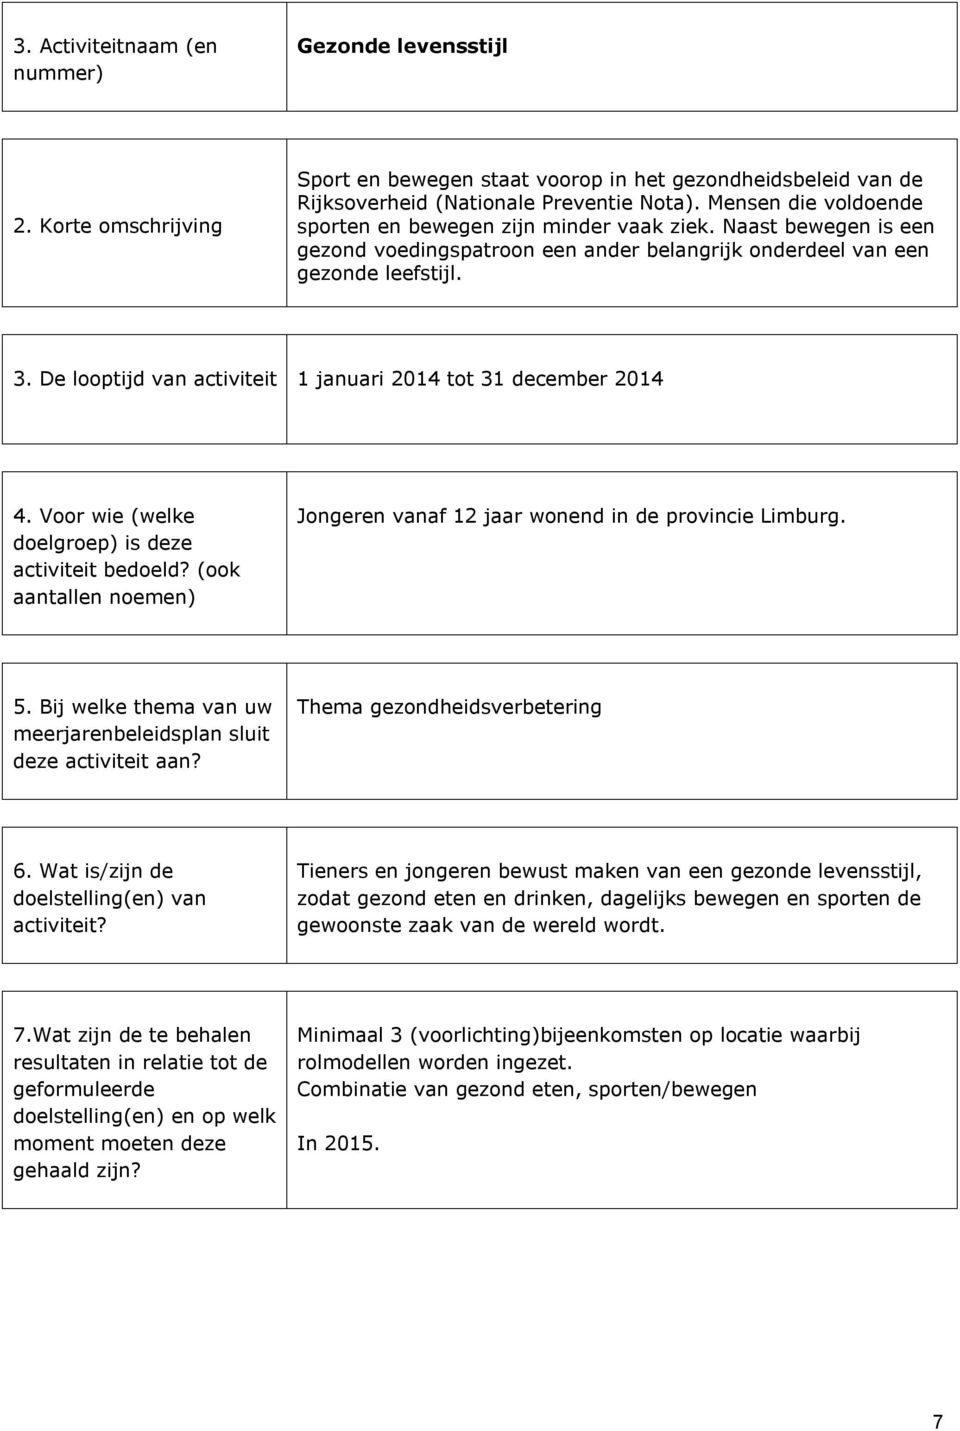 De looptijd van activiteit 1 januari 2014 tot 31 december 2014 4. Voor wie (welke doelgroep) is deze activiteit bedoeld? (ook aantallen noemen) Jongeren vanaf 12 jaar wonend in de provincie Limburg.